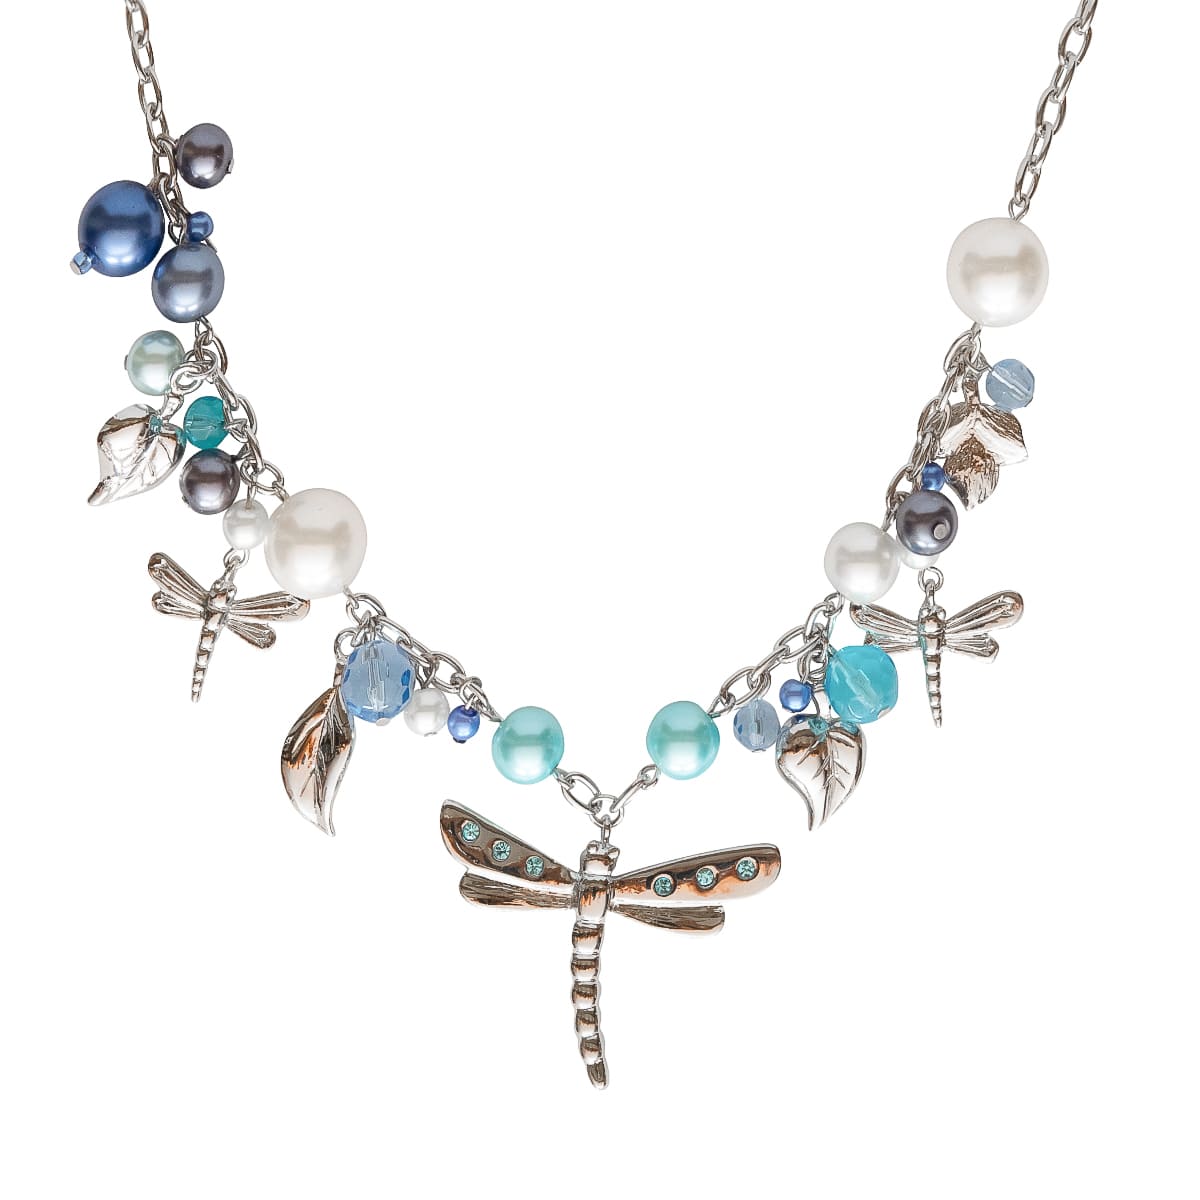 K.V. Fuchs Design Schmuck Damen Halskette in silber mit Schmetterling, Perlen in blau, grau, türkis, weiß und Zirkonia in blau »K-3001«